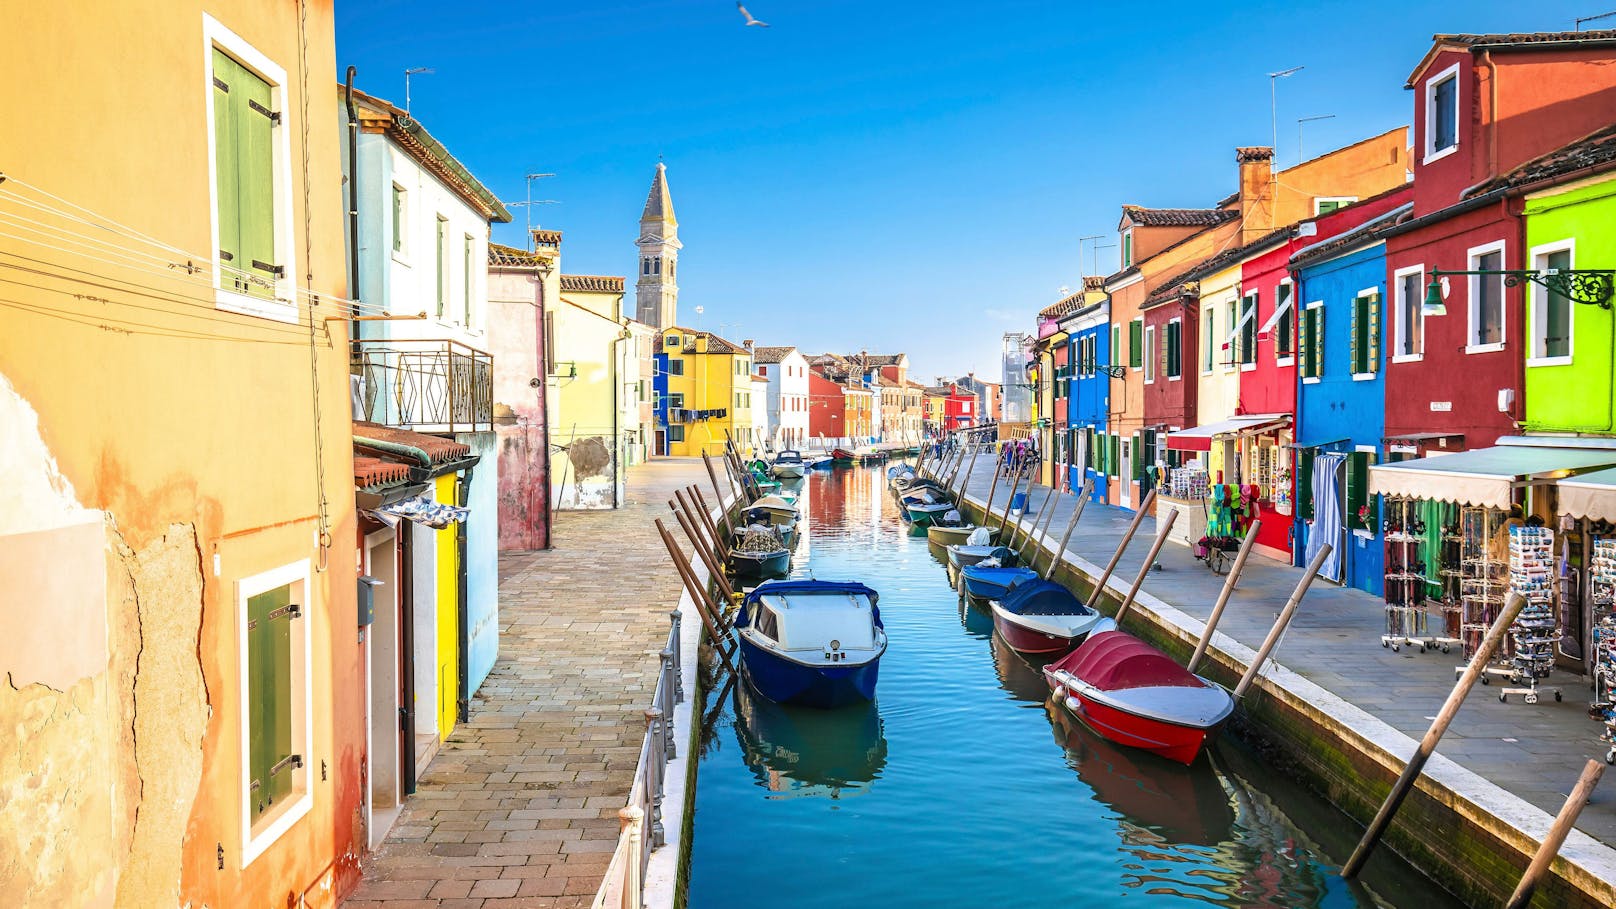 Wer ohne Touristenmassen an einem Kanal entlang spazieren möchte, sollte Venedig meiden und stattdessen auf die kleine italienische Insel Burano vor der Küste Venedigs ausweichen - und sich an den bunten Gebäuden erfreuen.